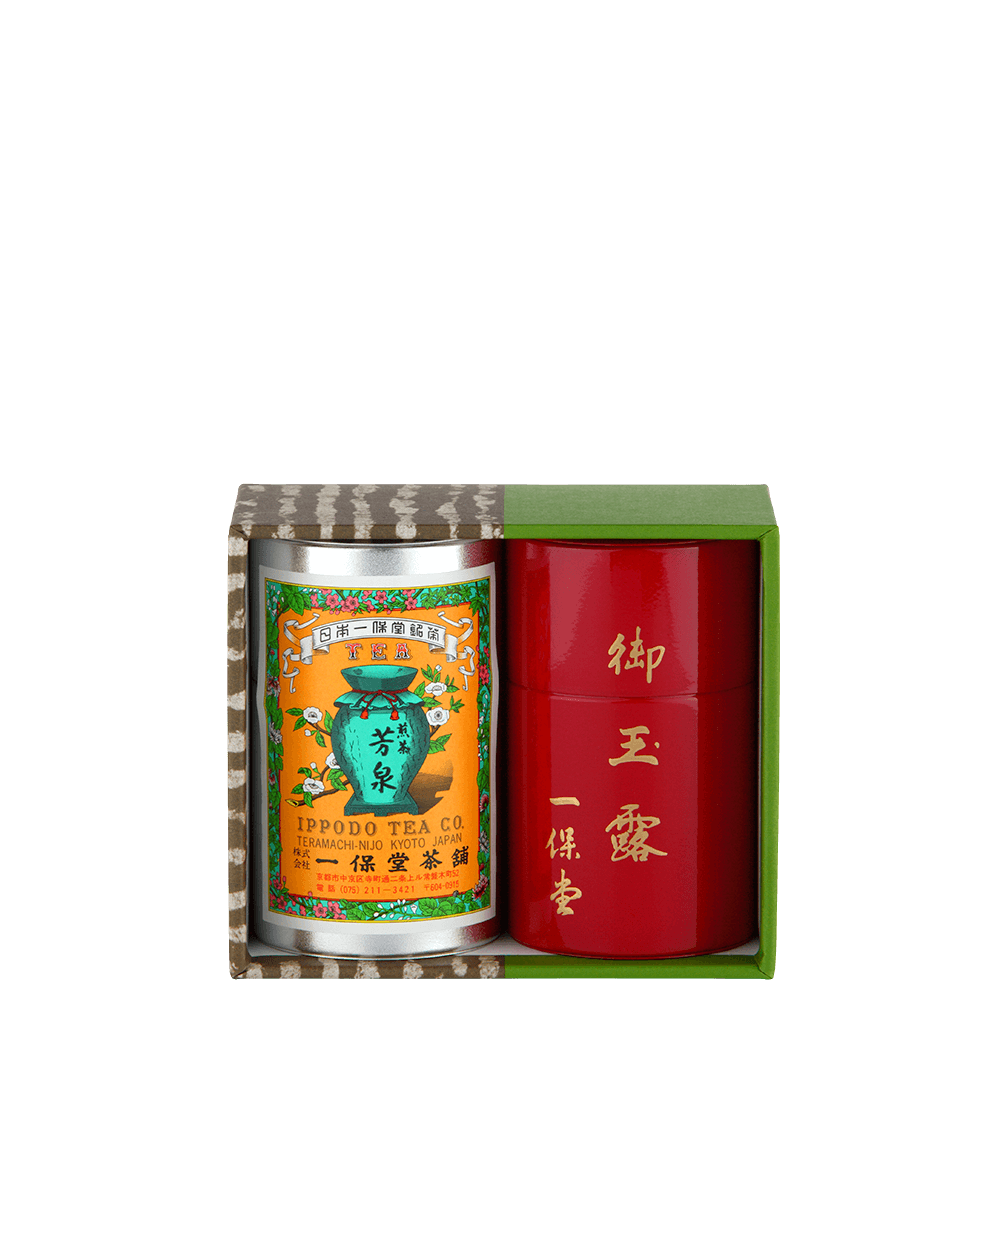 玉露 麟鳳・煎茶 芳泉 (小缶) – 一保堂茶舗